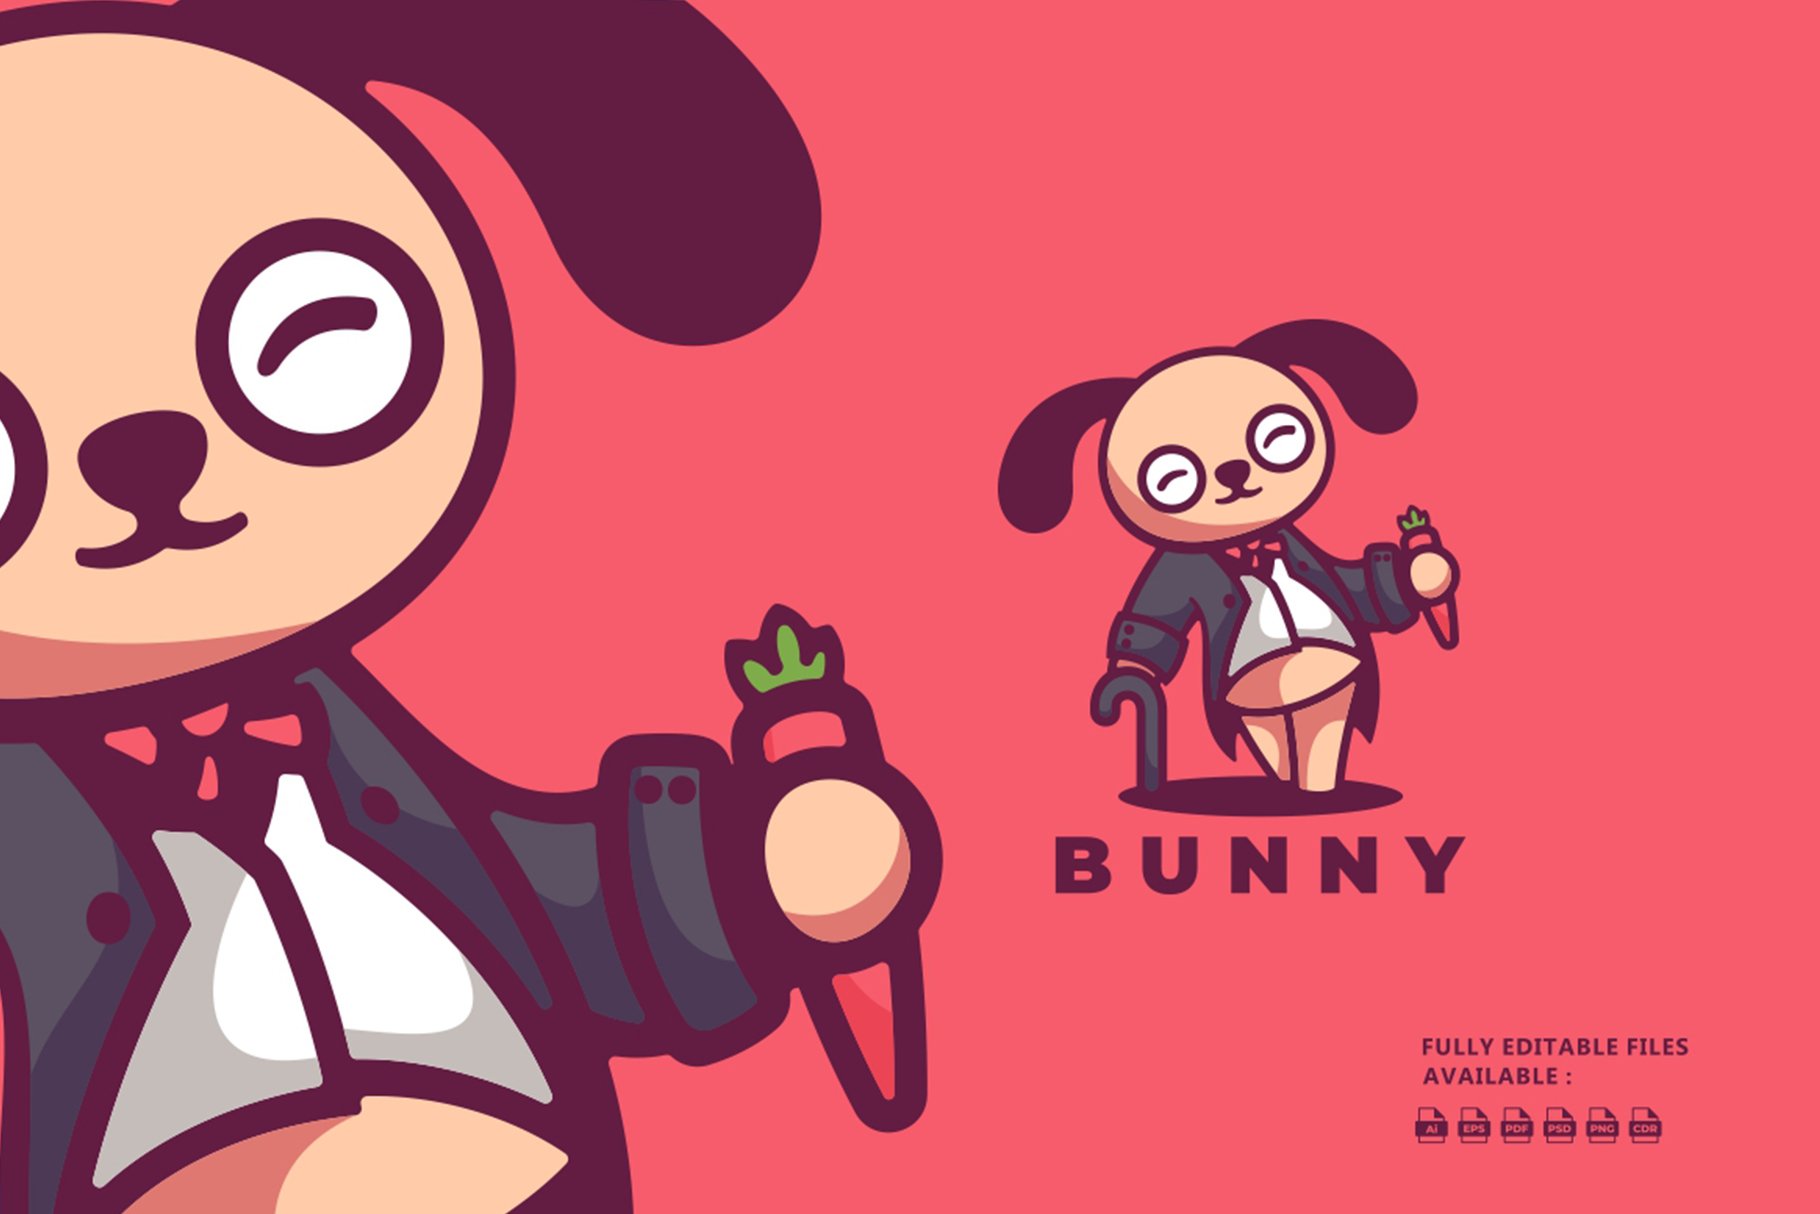 Bunny Mascot Cartoon Logo cover image.